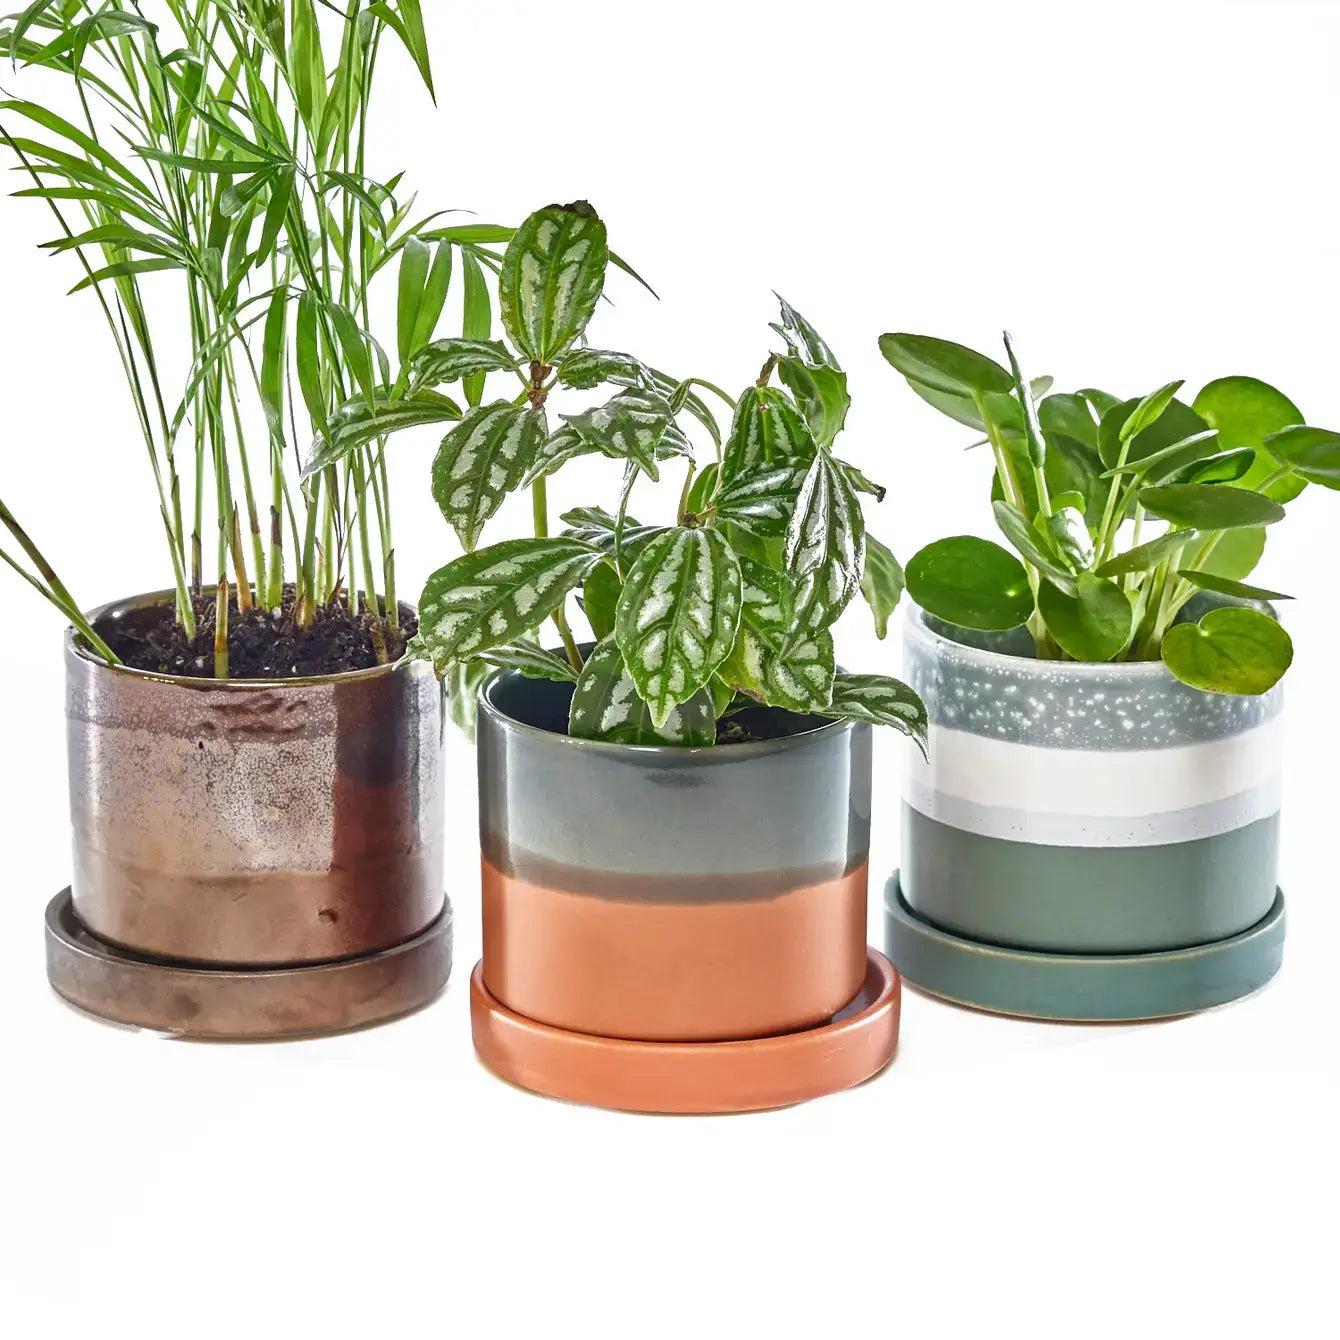 Chive - Minute Ceramic Plant Pots Indoor: Cosmos / 5"